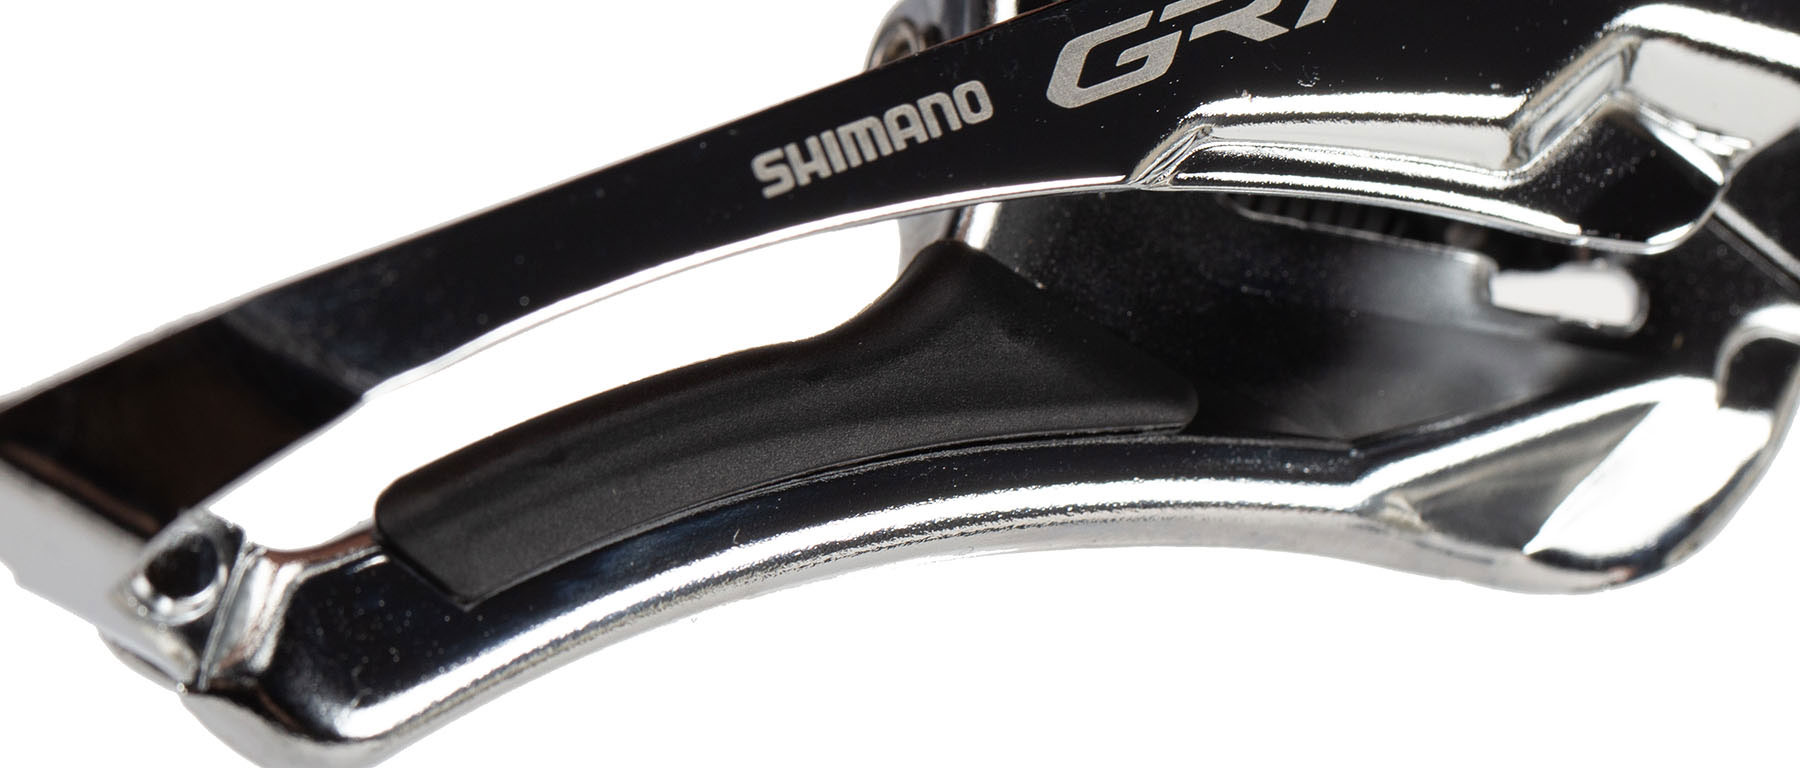 Shimano GRX FD-RX810 11-Speed Front Derailleur